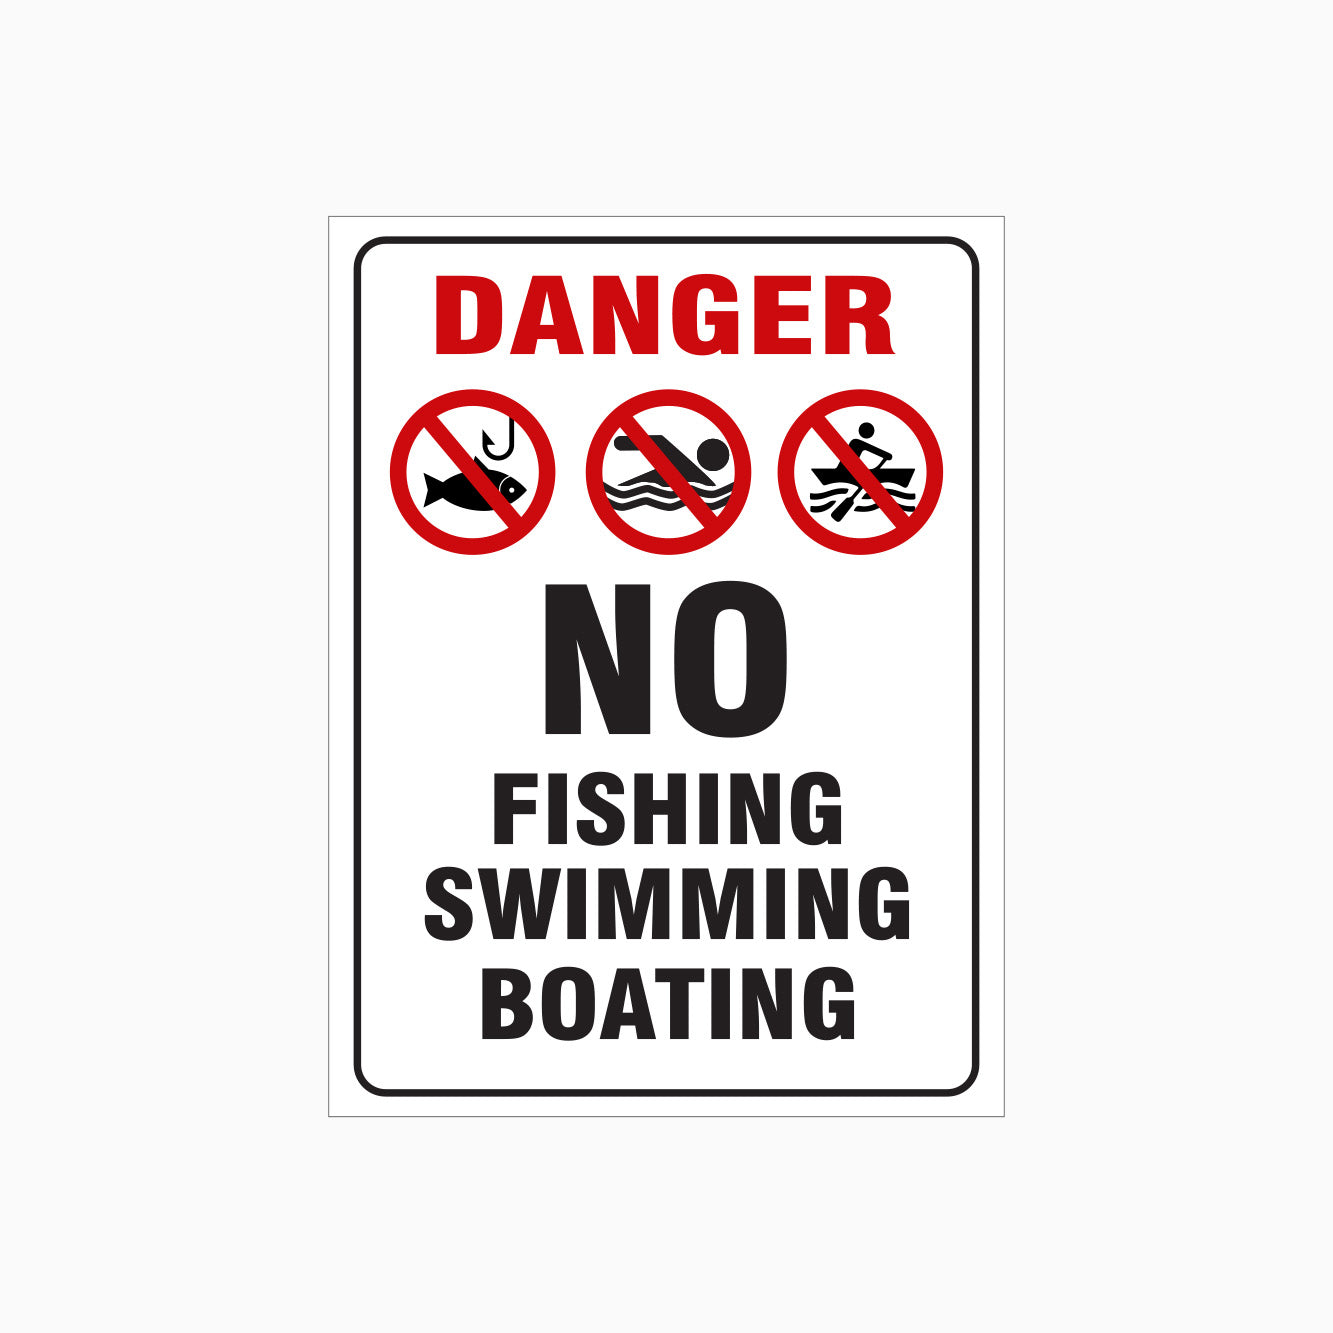 DANGER SIGN - NO FISHING SIGN - NO SWIMMING SIGN - NO BOATING SIGN